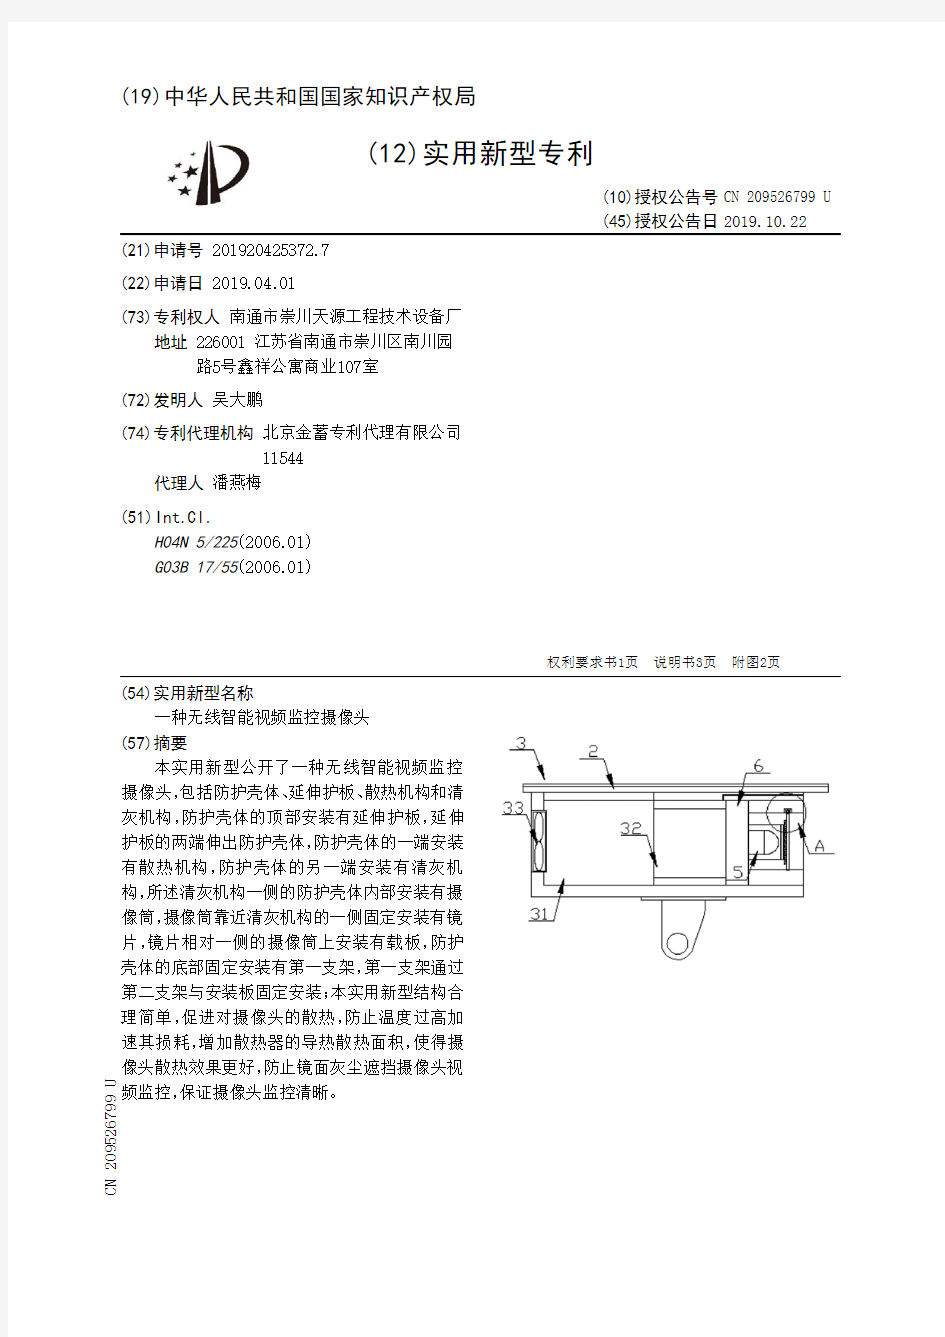 【CN209526799U】一种无线智能视频监控摄像头【专利】